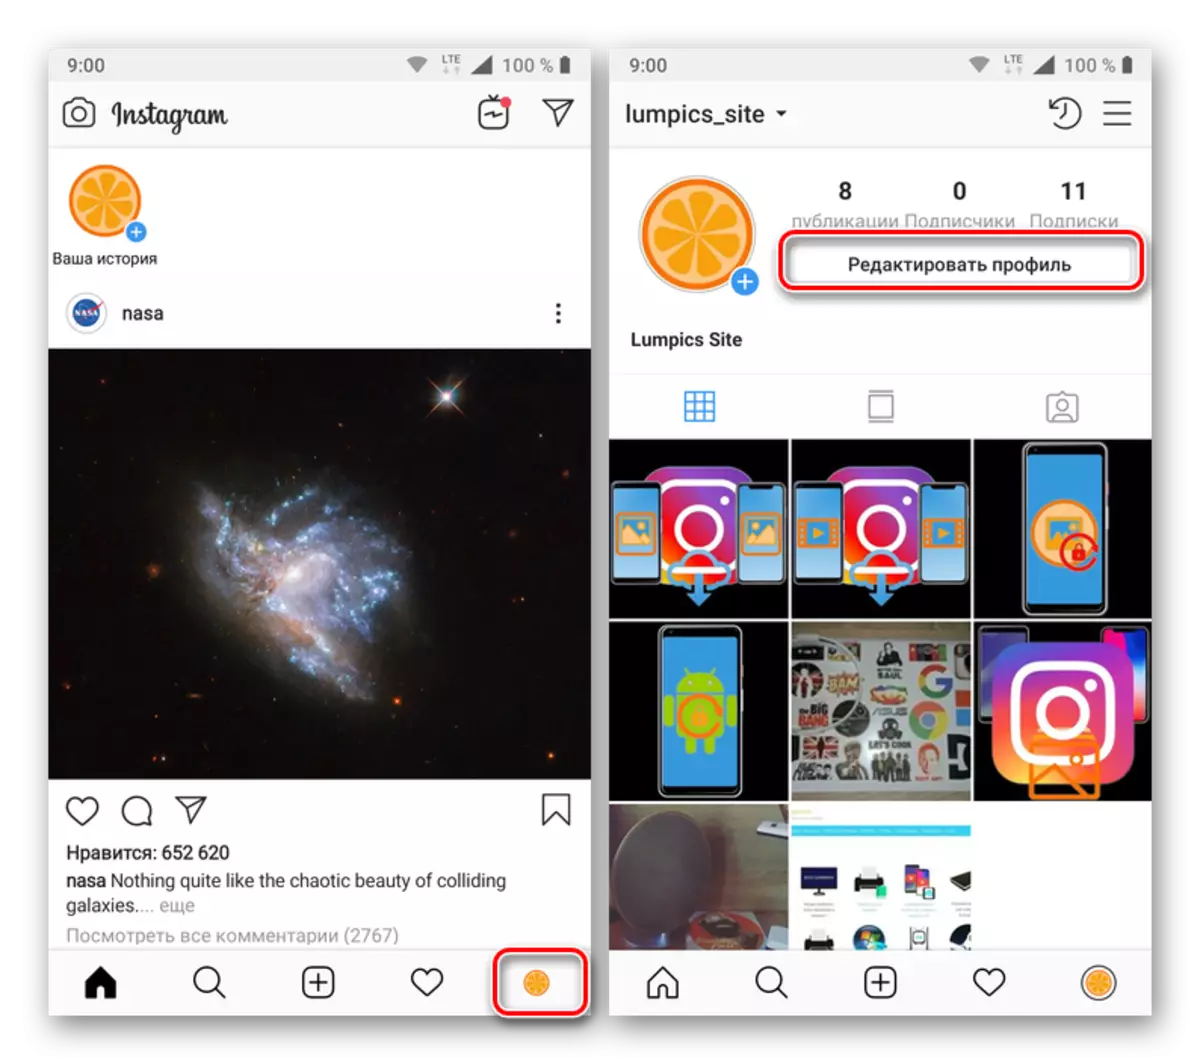 Joan zure profila editatzera Instagram eranskinean